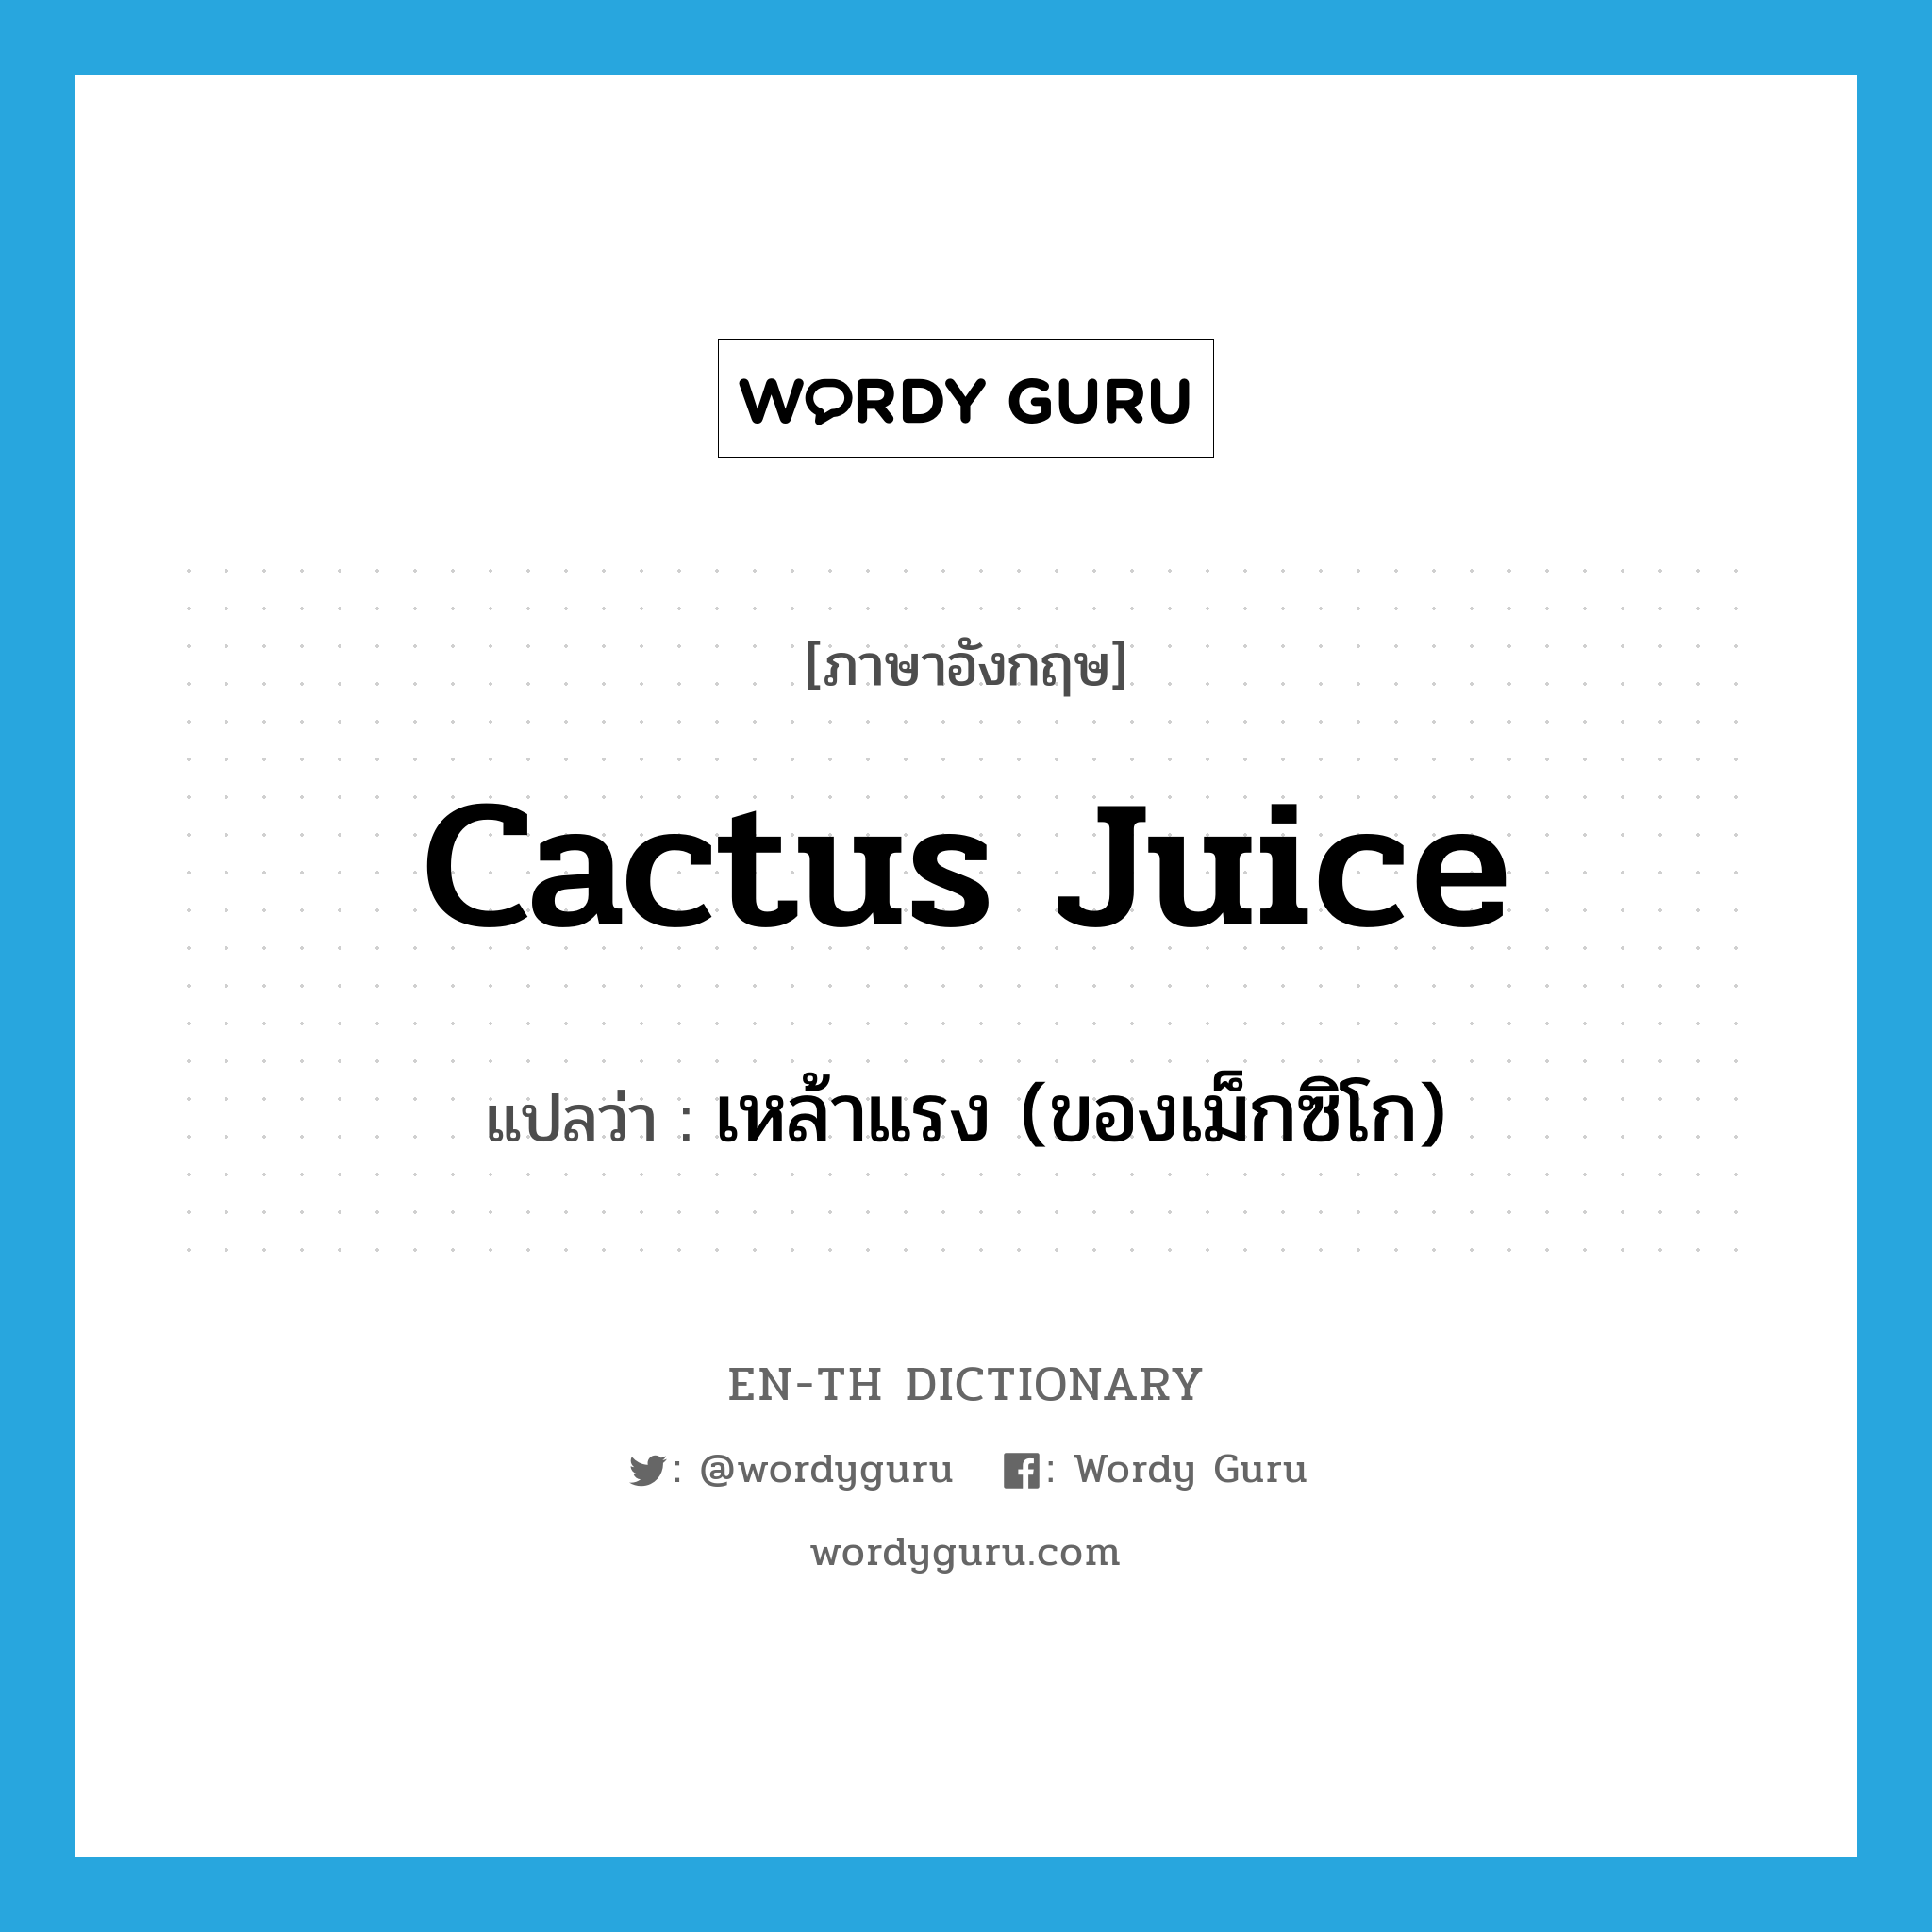 เหล้าแรง (ของเม็กซิโก) ภาษาอังกฤษ?, คำศัพท์ภาษาอังกฤษ เหล้าแรง (ของเม็กซิโก) แปลว่า cactus juice ประเภท SL หมวด SL